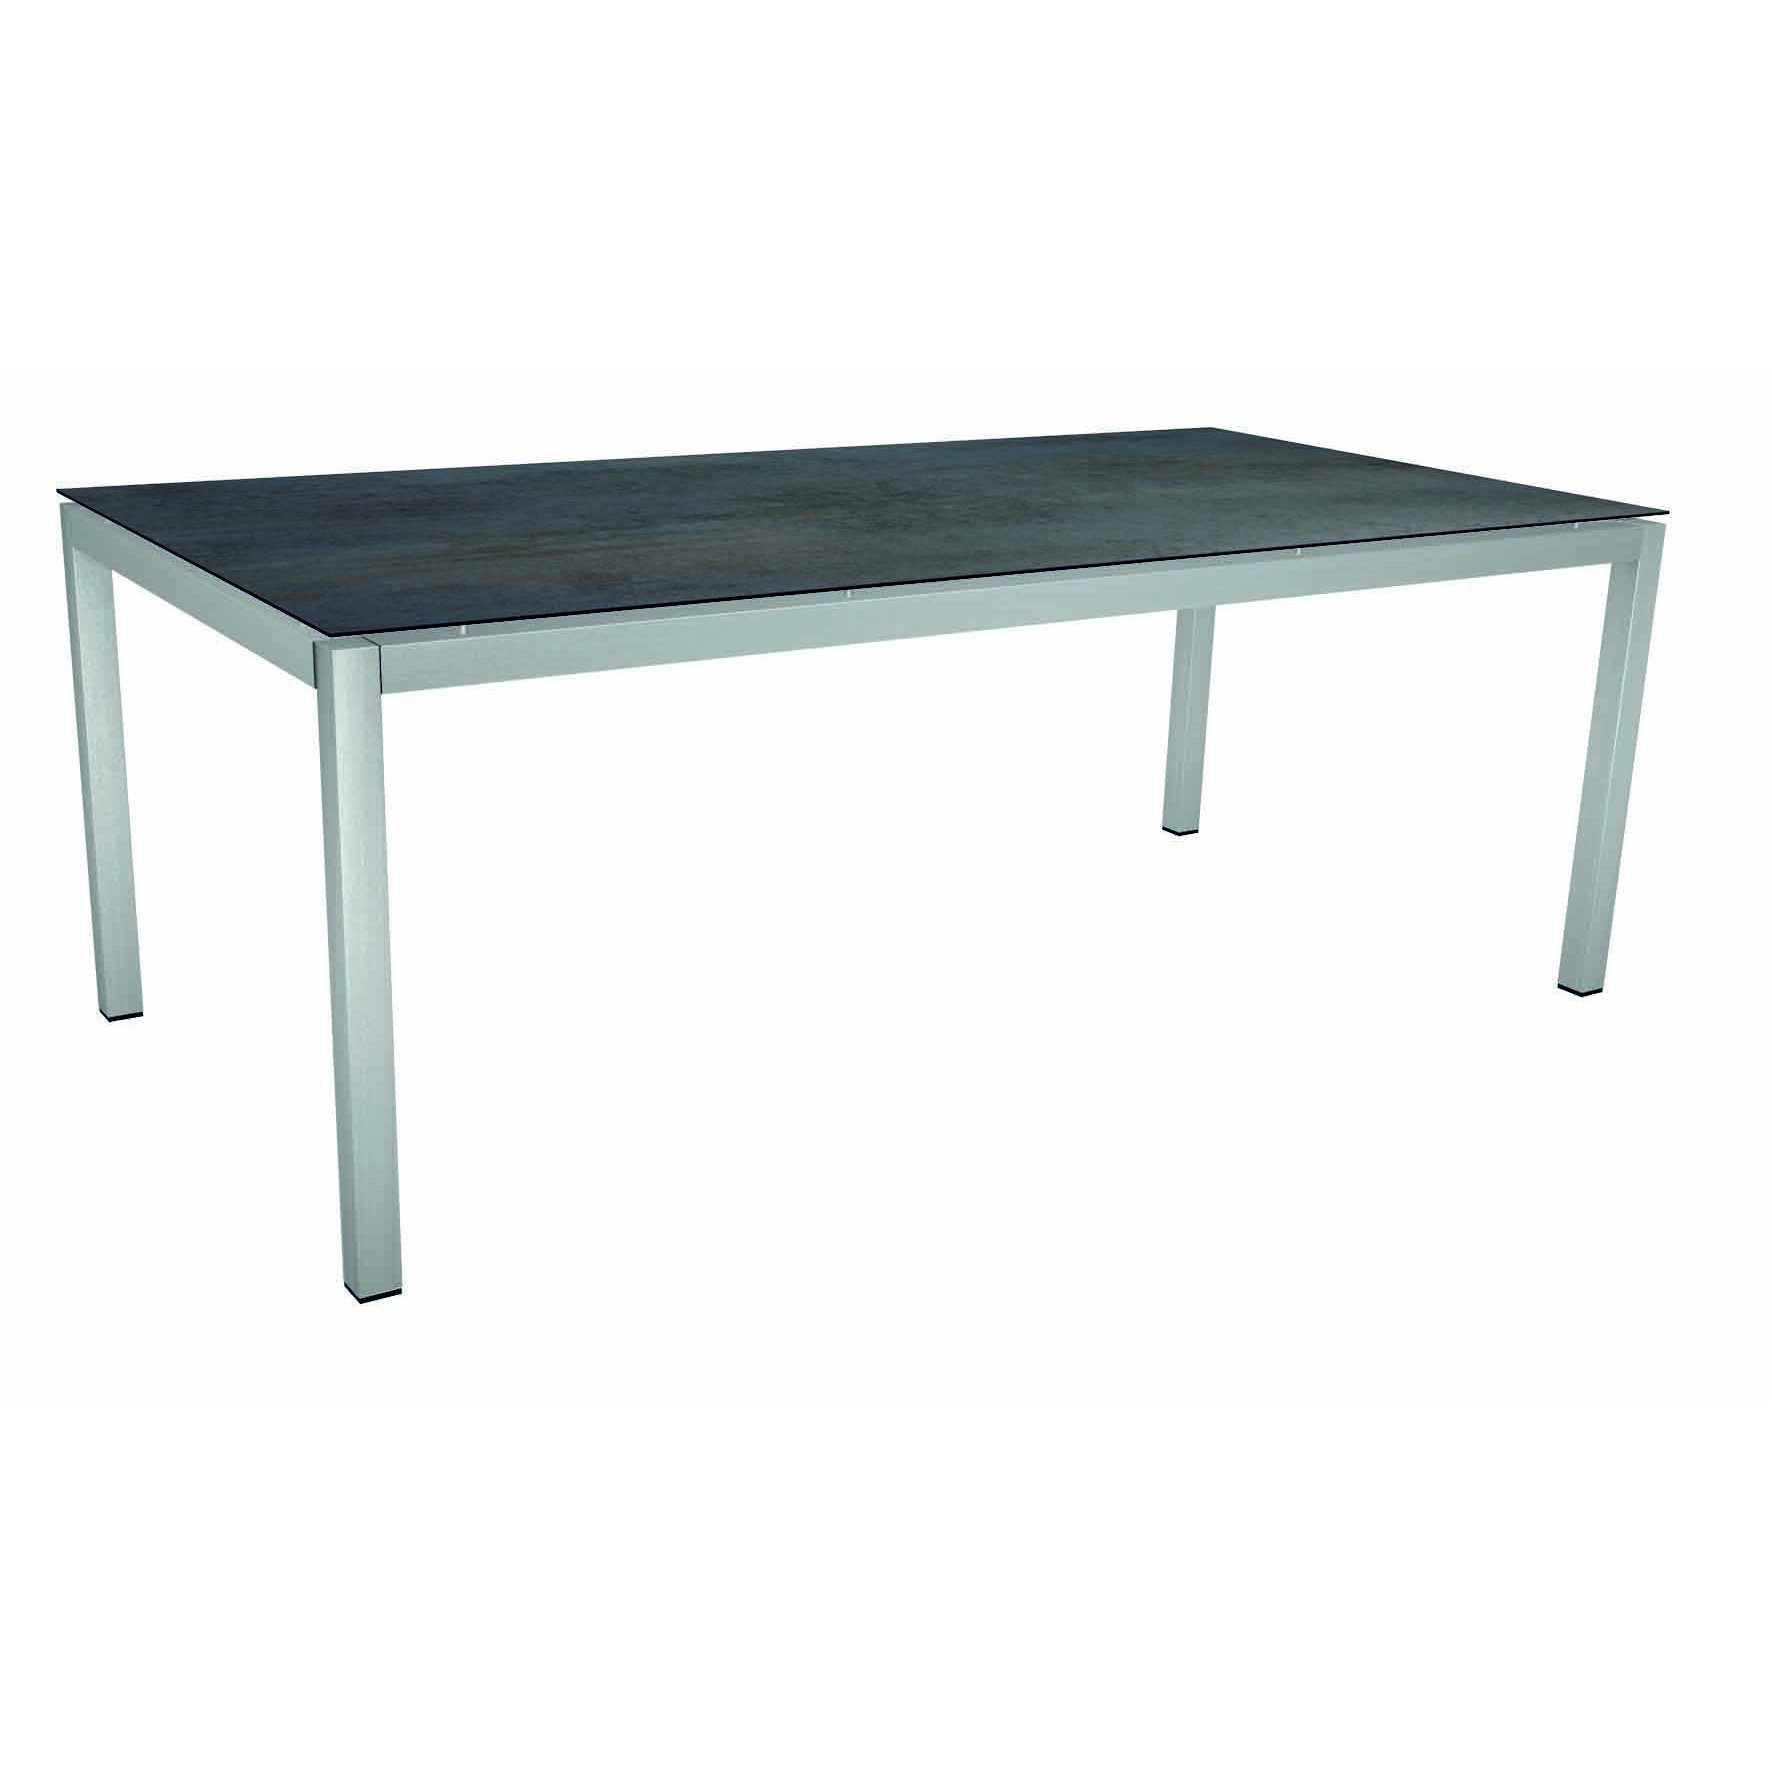 Stern Gartentisch, Gestell Edelstahl Vierkant, Tischplatte HPL Nitro, Größe: 200x100 cm